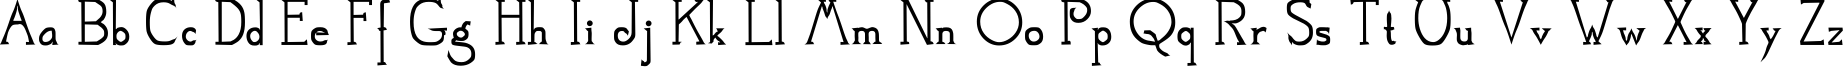 Пример написания английского алфавита шрифтом Mestra